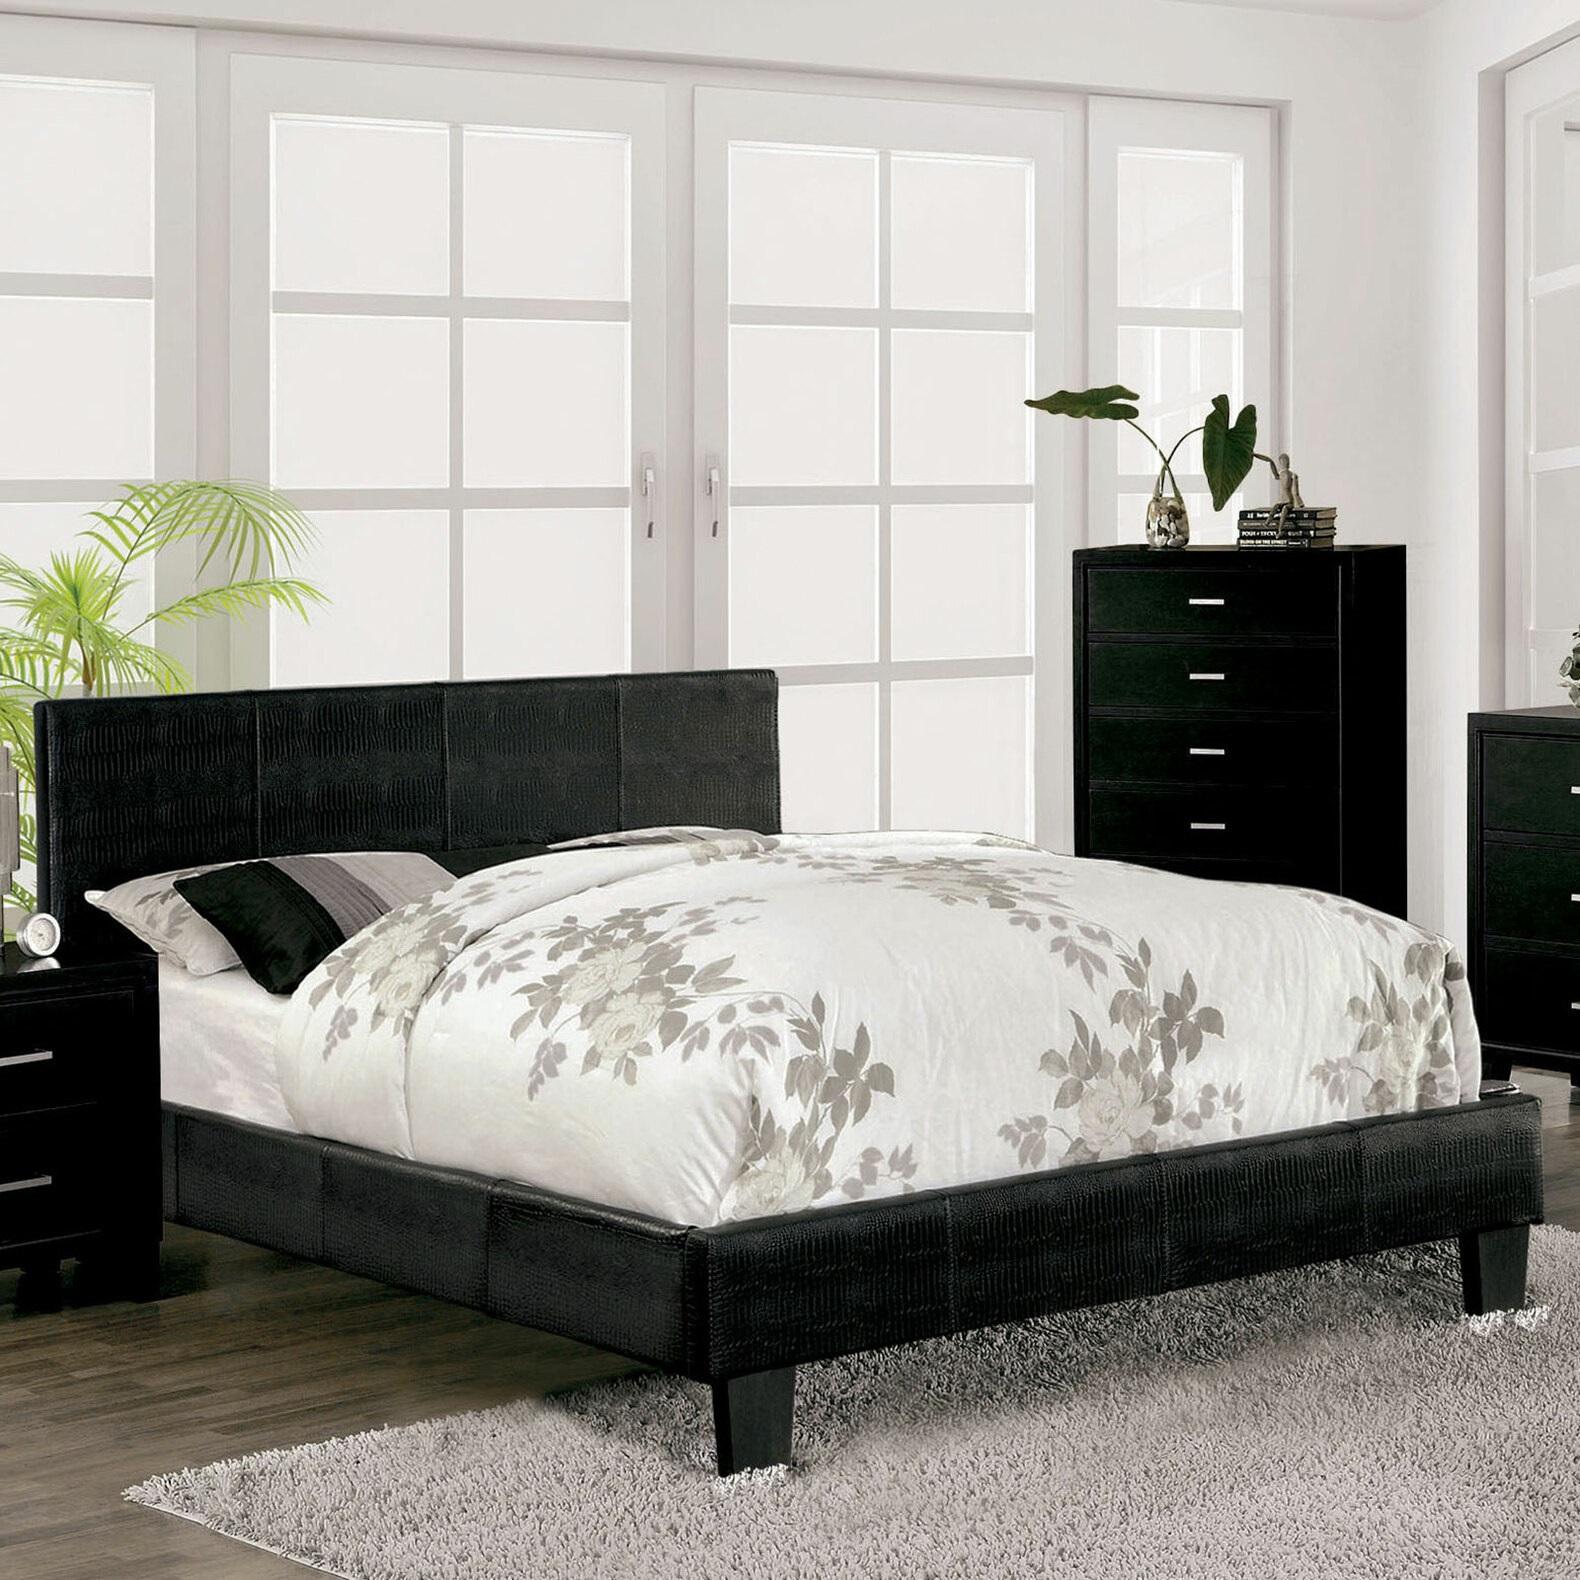 

    
Contemporary Black Solid Wood CAL Bedroom Set 5pcs Furniture of America CM7793BK-CK Wallen
